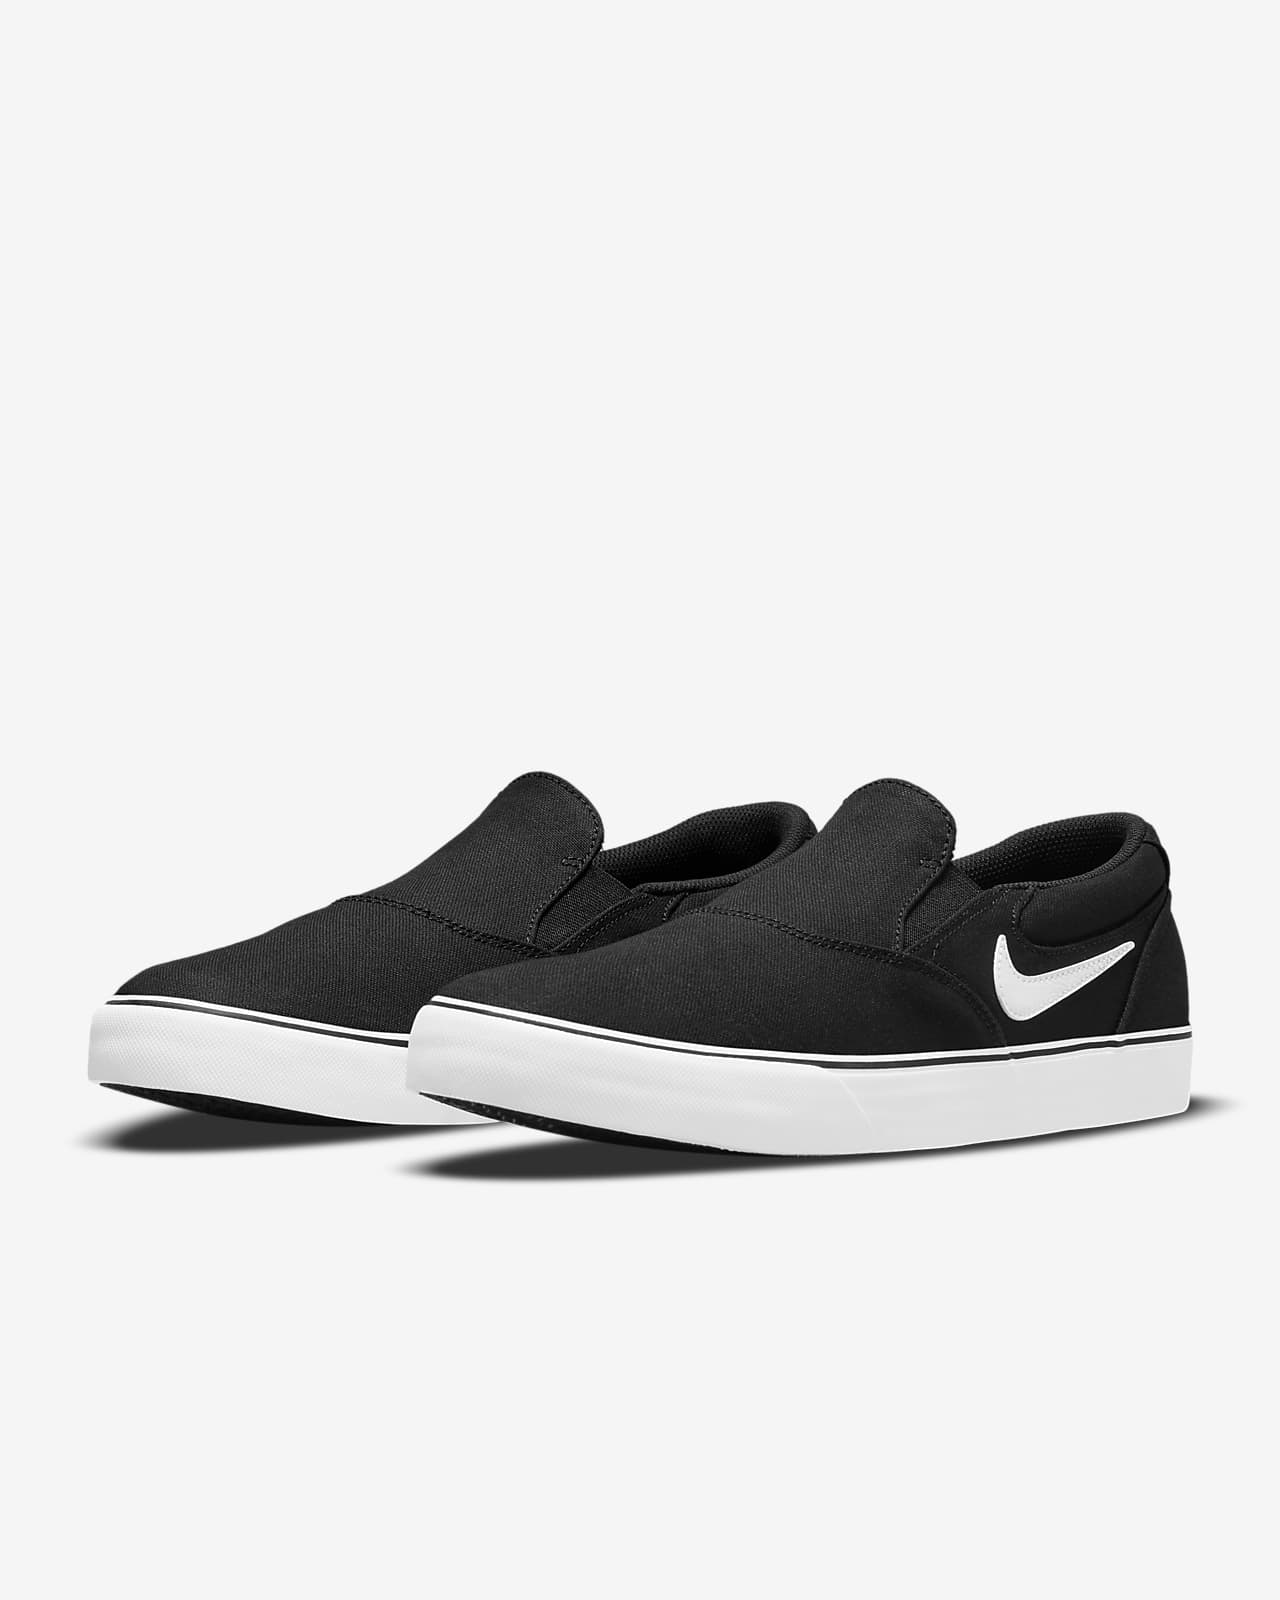 Nike SB Chron 2 Slip Skate Shoe